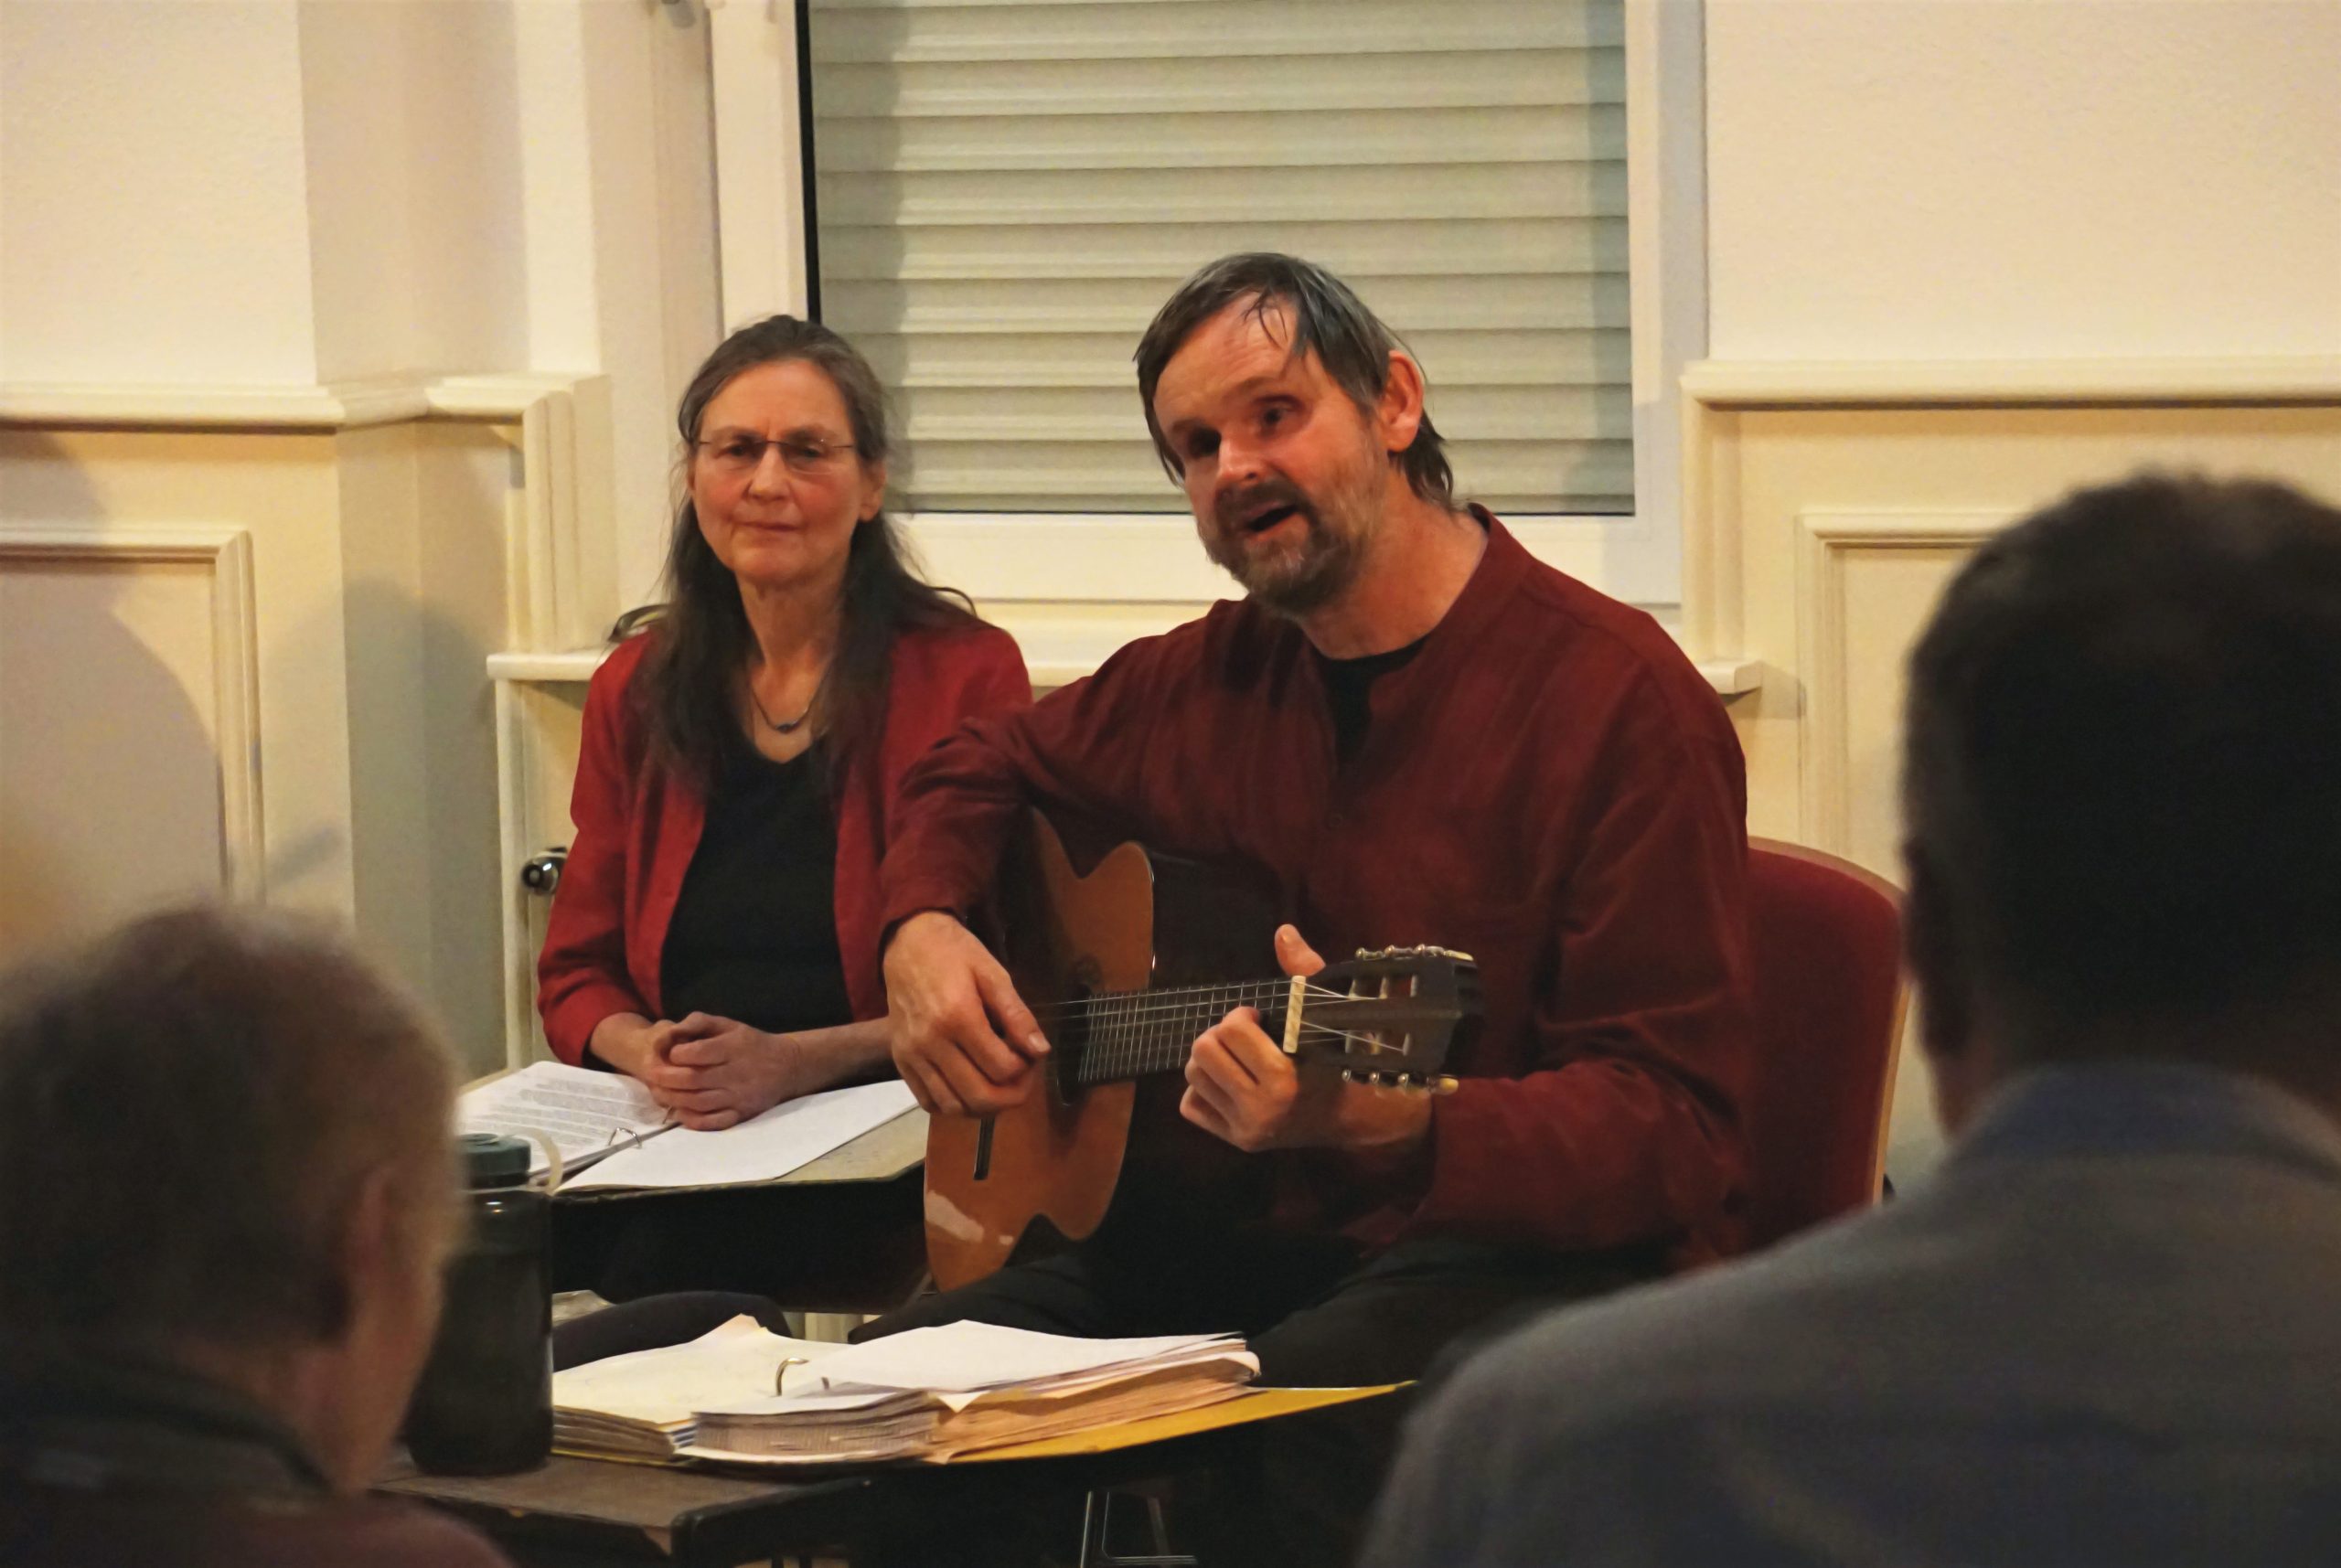 Ein Mann mit Gitarre sitzt spielend und singend neben einer Frau. Im Vordergrund erkennt man unscharfe Teile von Zuschauern.